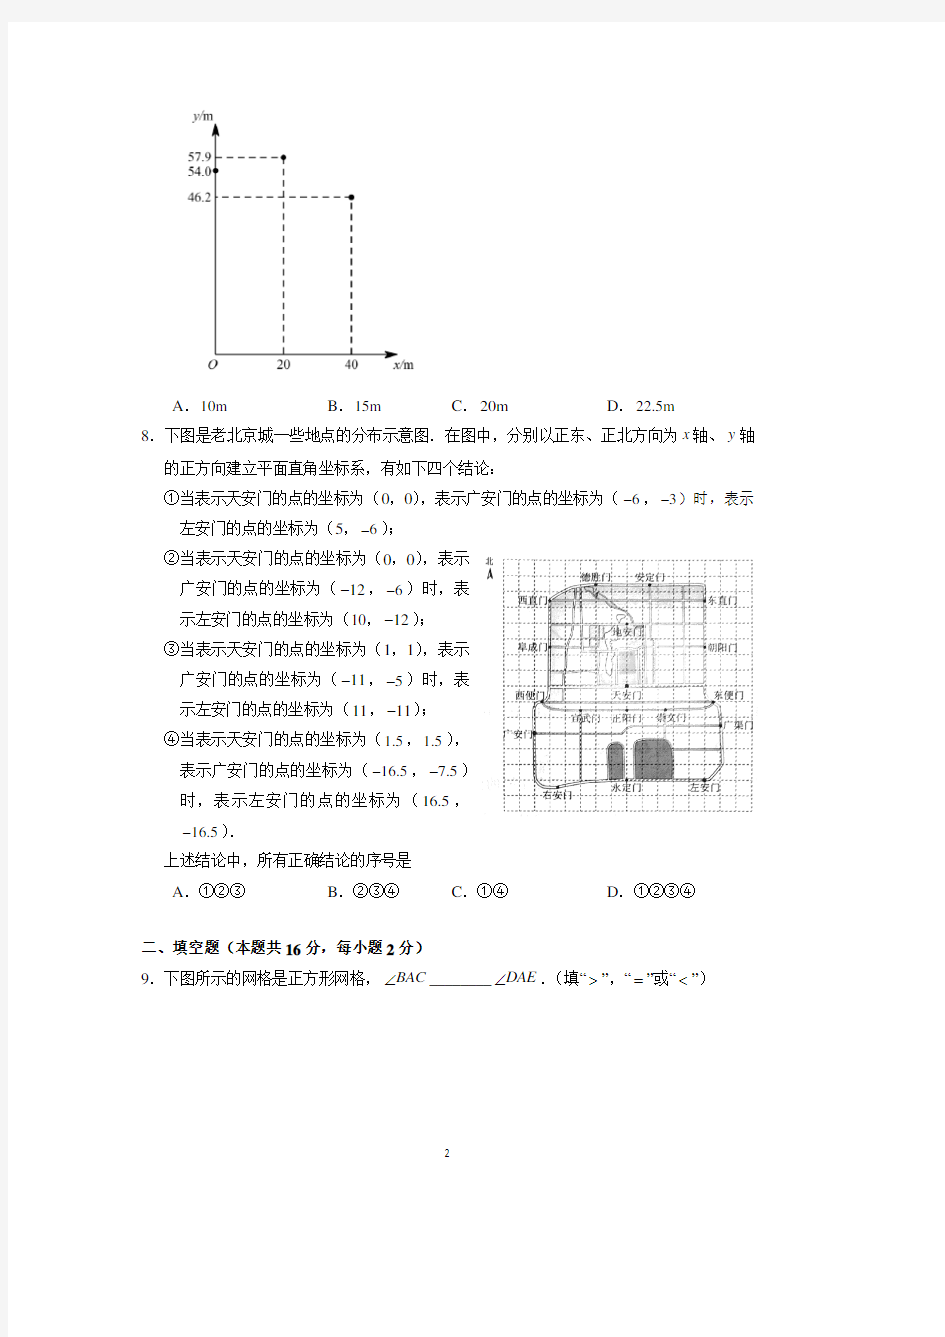 2018年北京市中考数学试卷(含答案解析).pdf